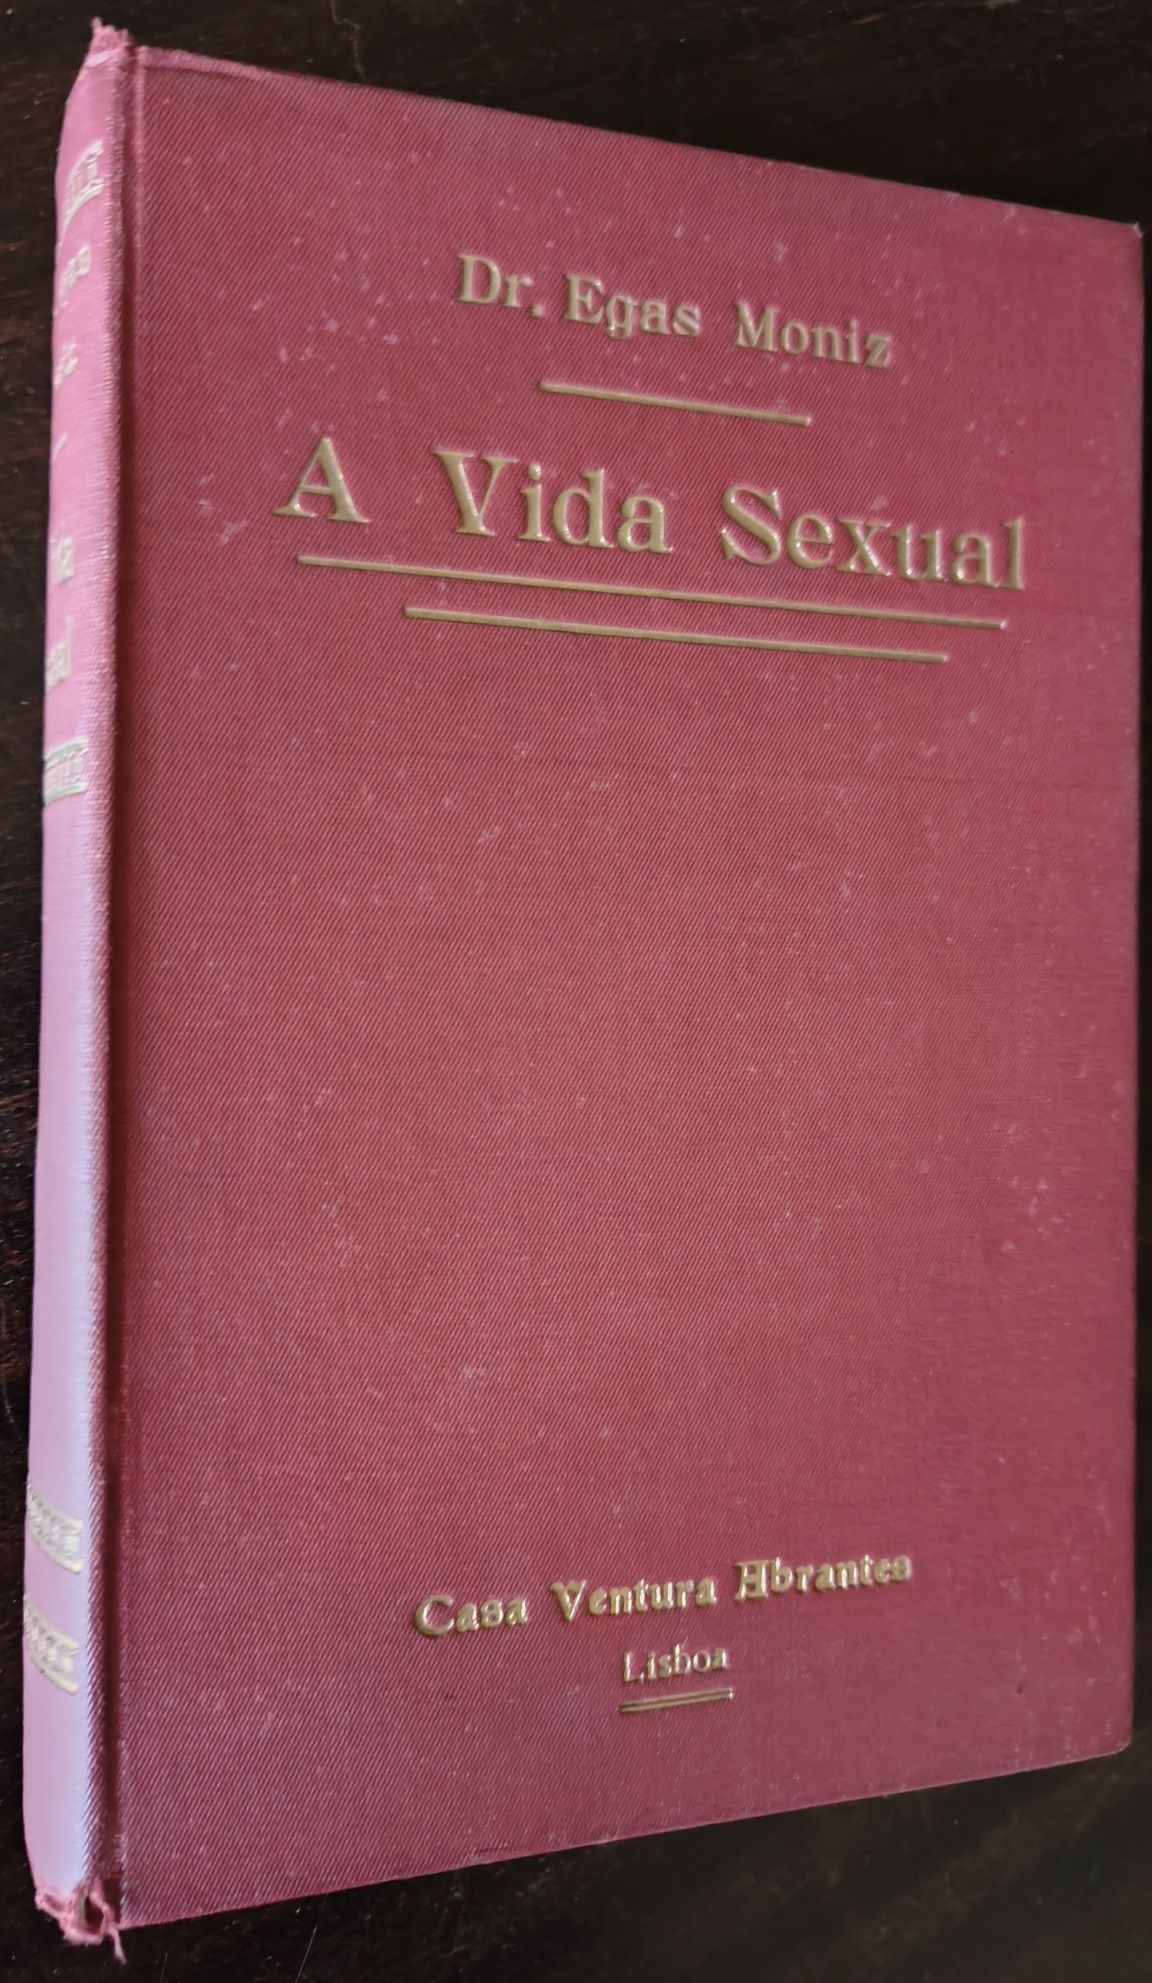 A Vida Sexual - Dr. Egas Moniz